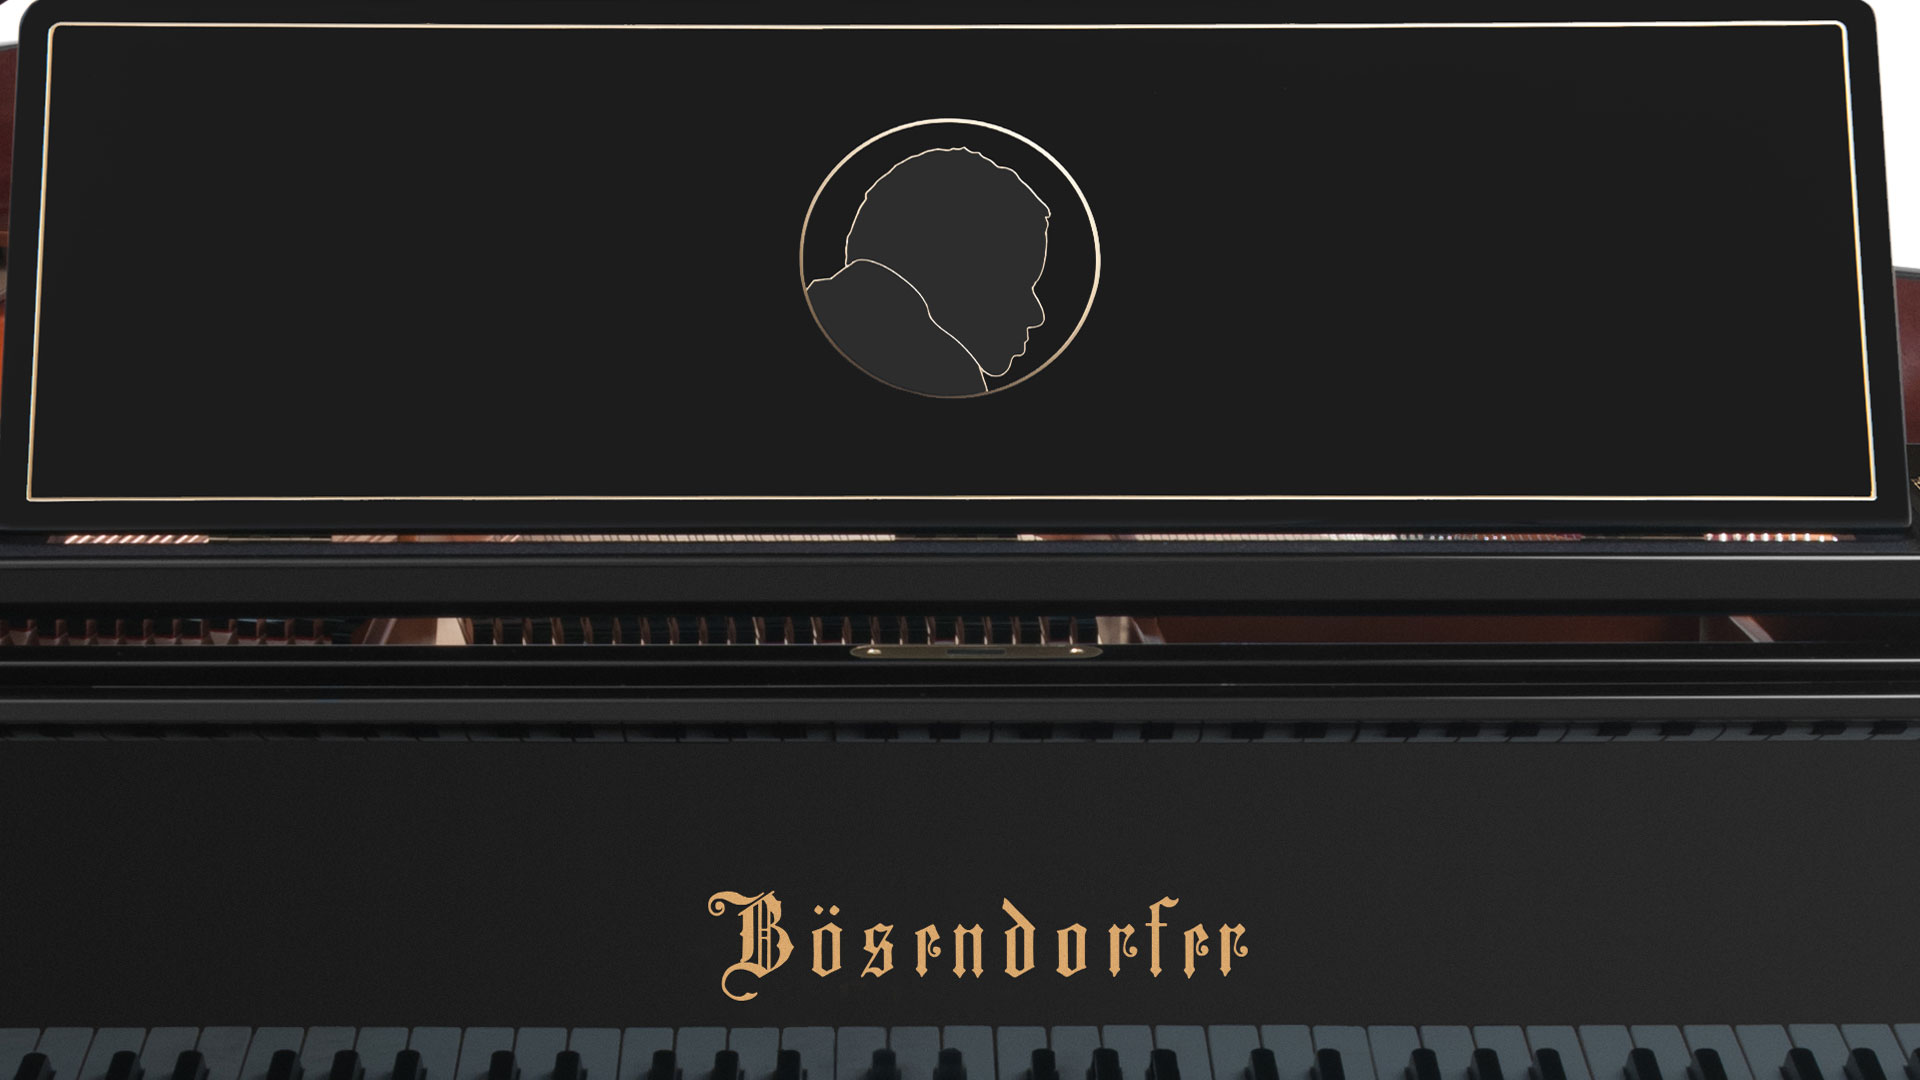 Bosendorfer piano Oscar Peterson grand piano